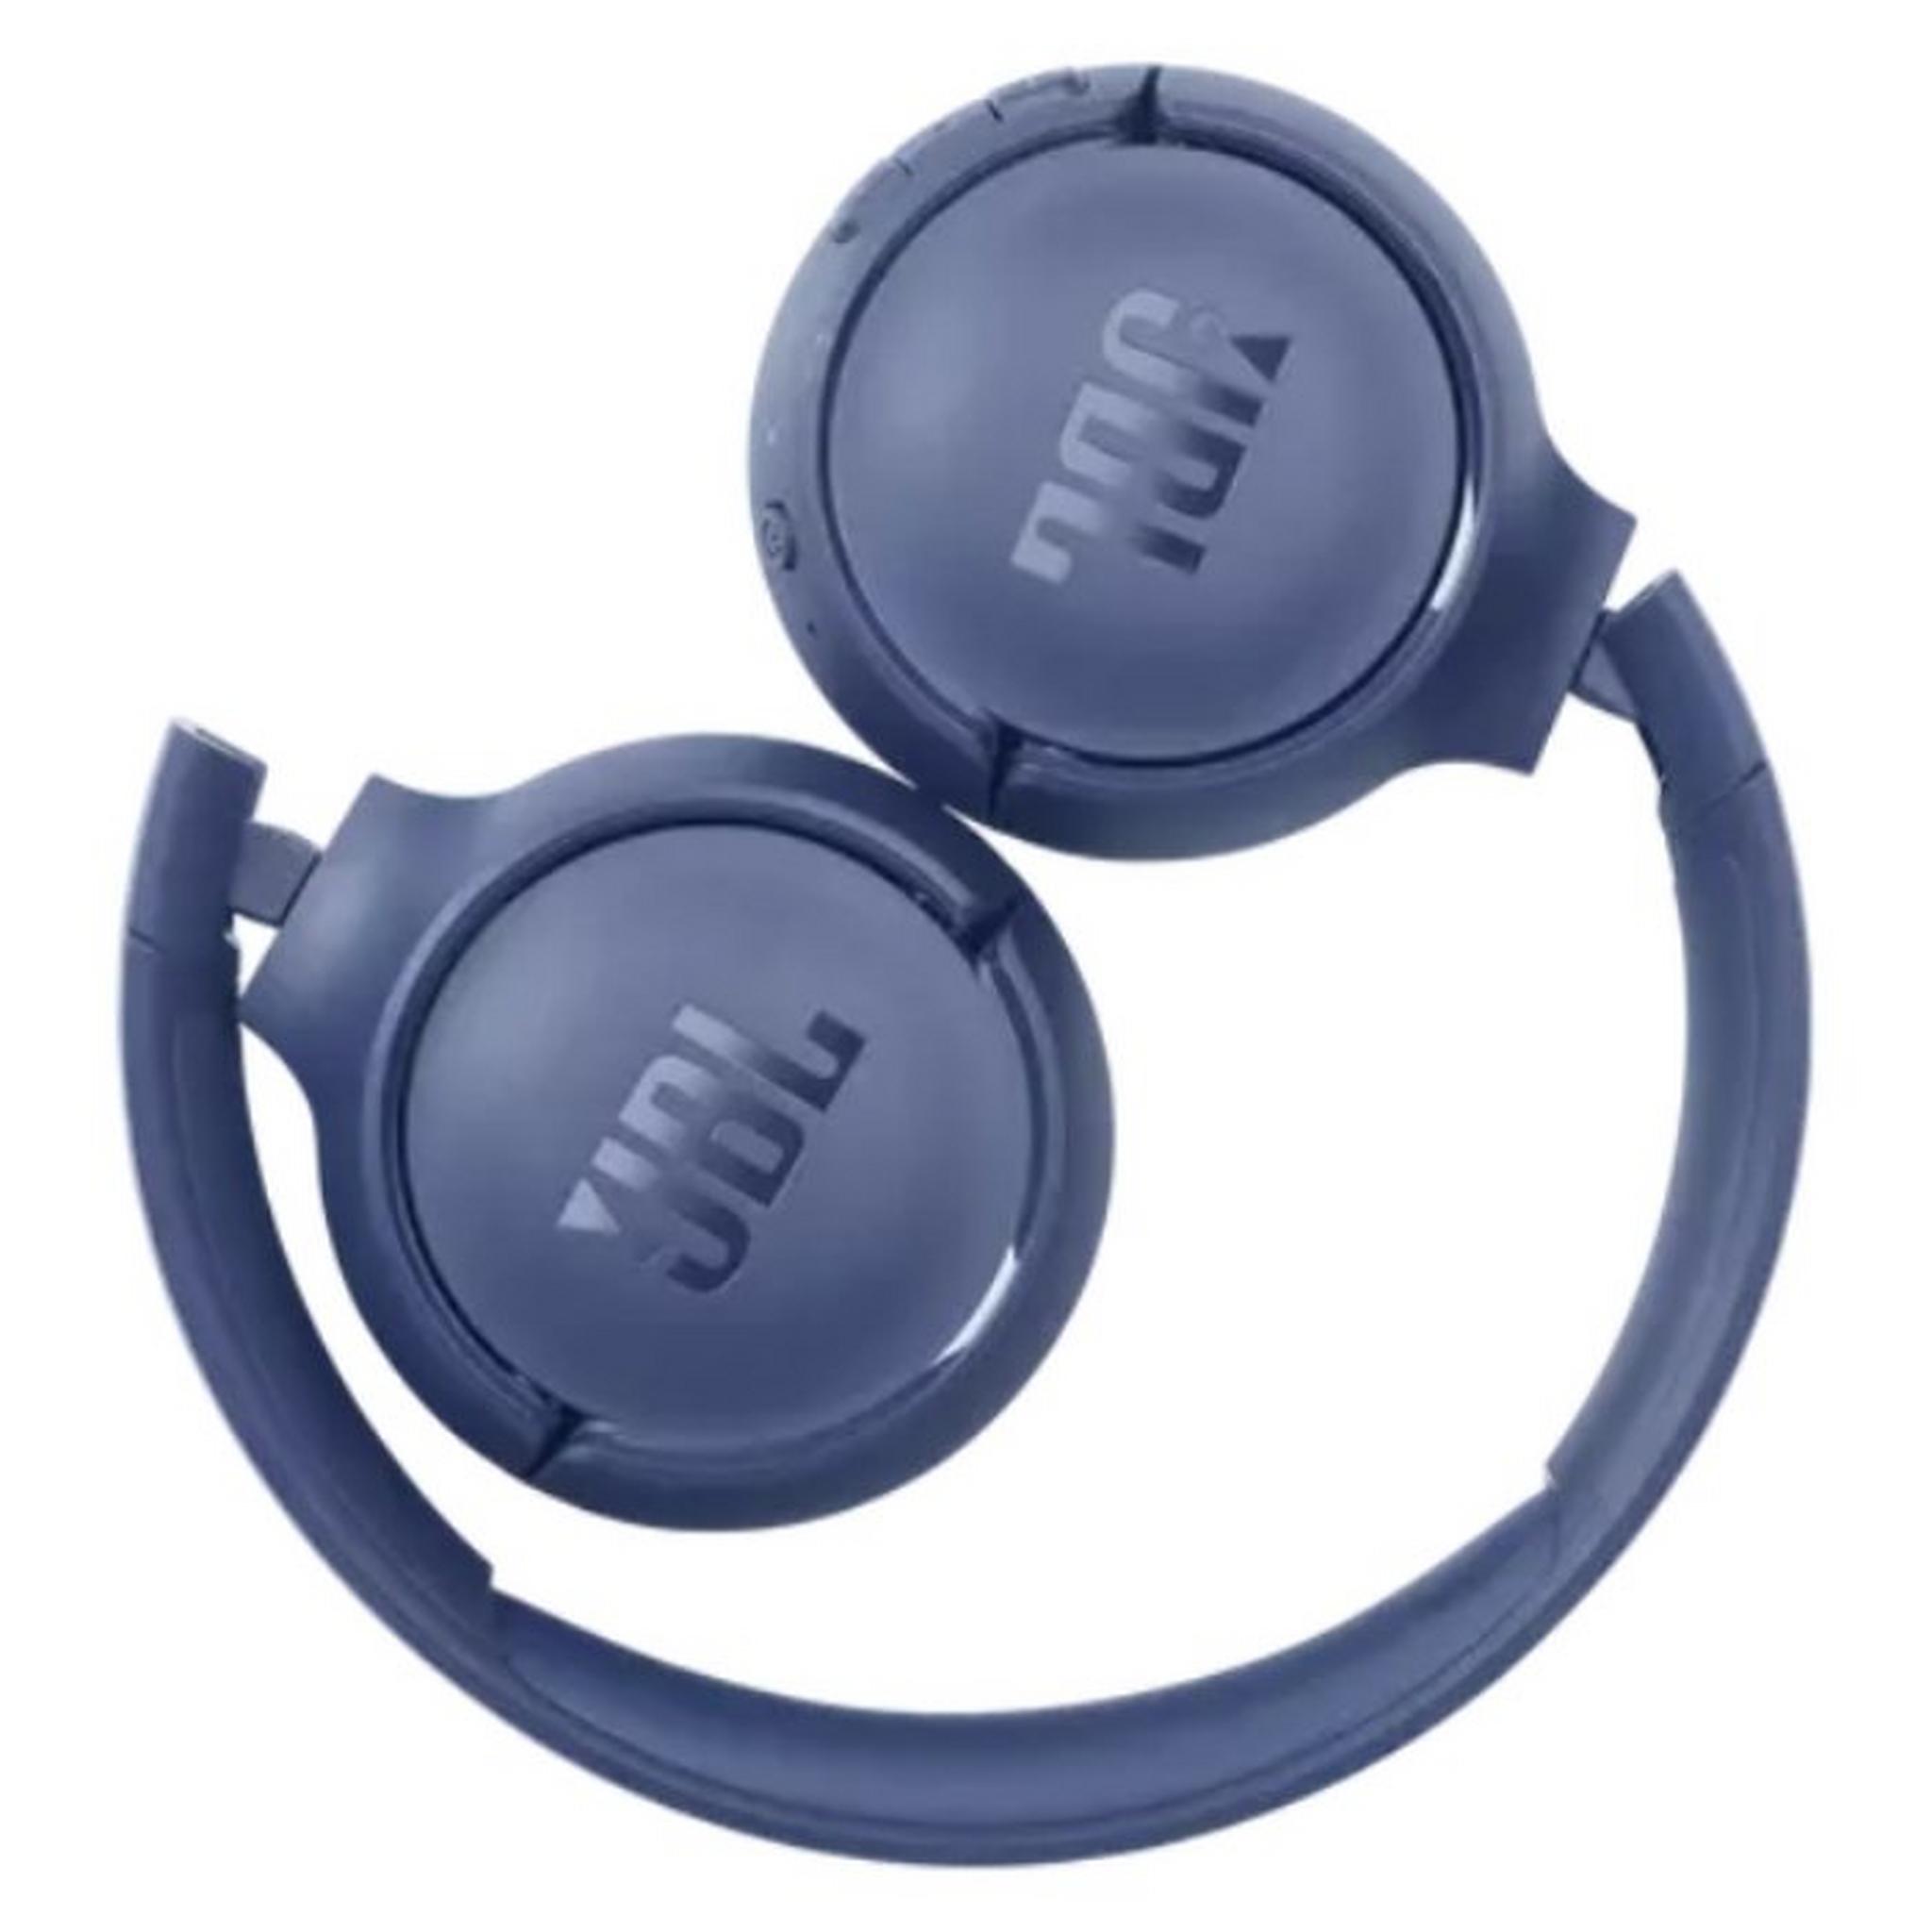 JBL Tune 510BT Wireless On-Ear headphones - Blue